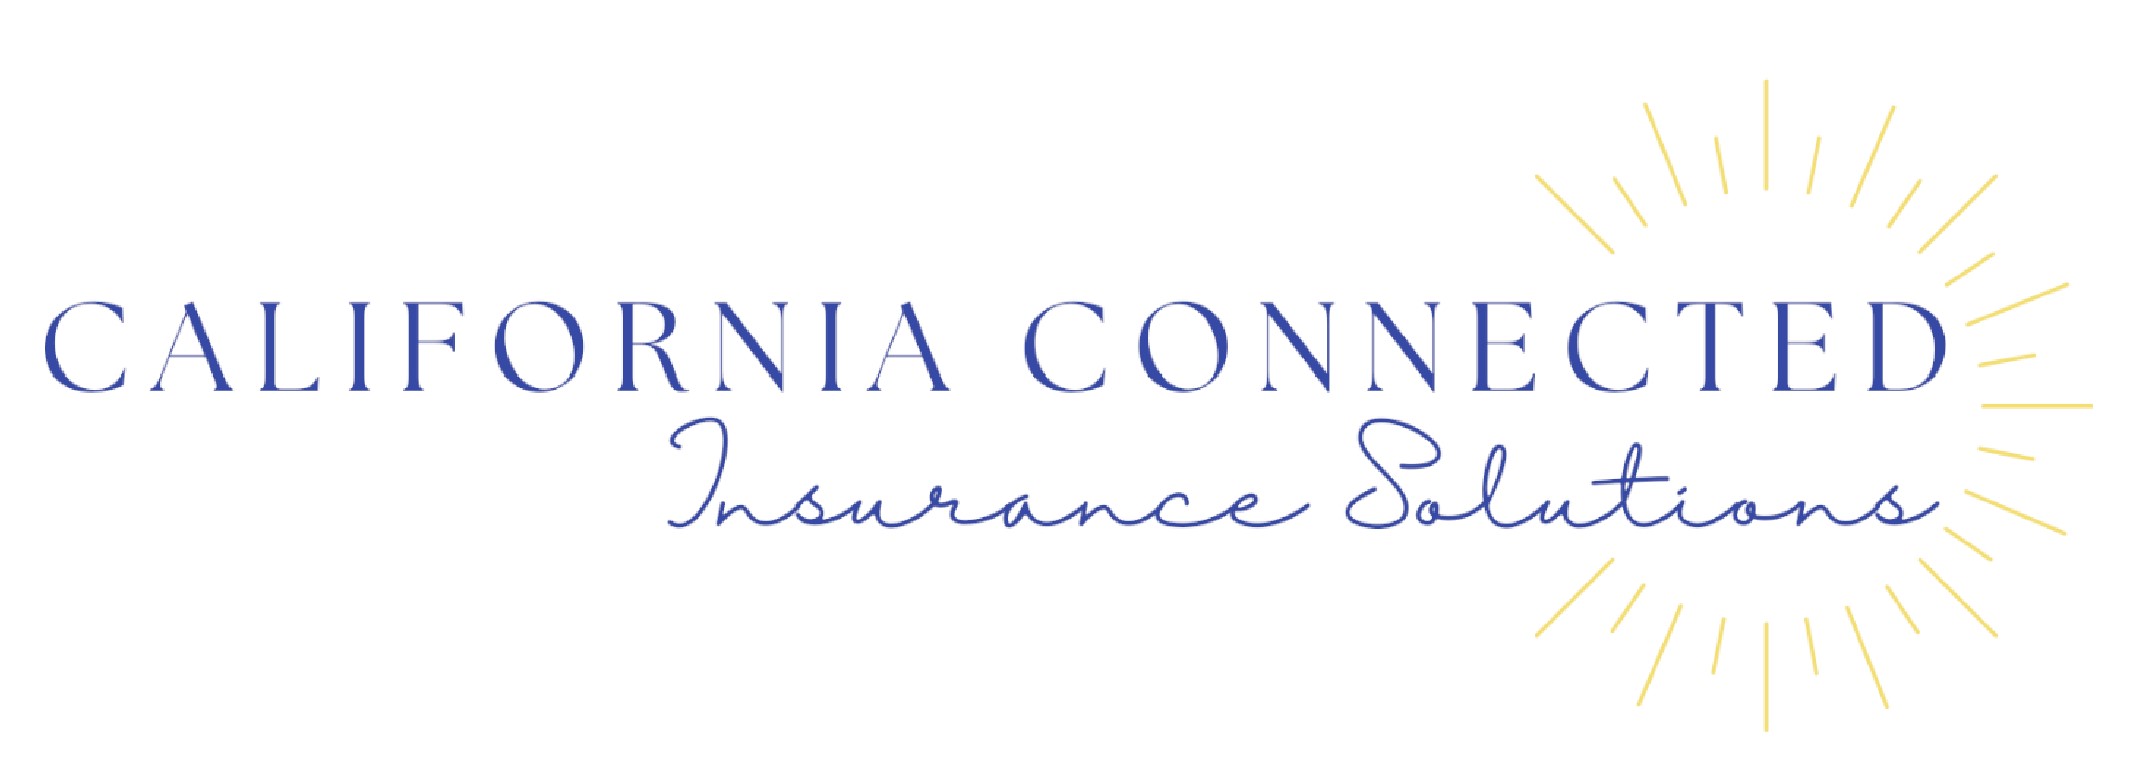 California Connected Insurance Co | CalNavigators.com